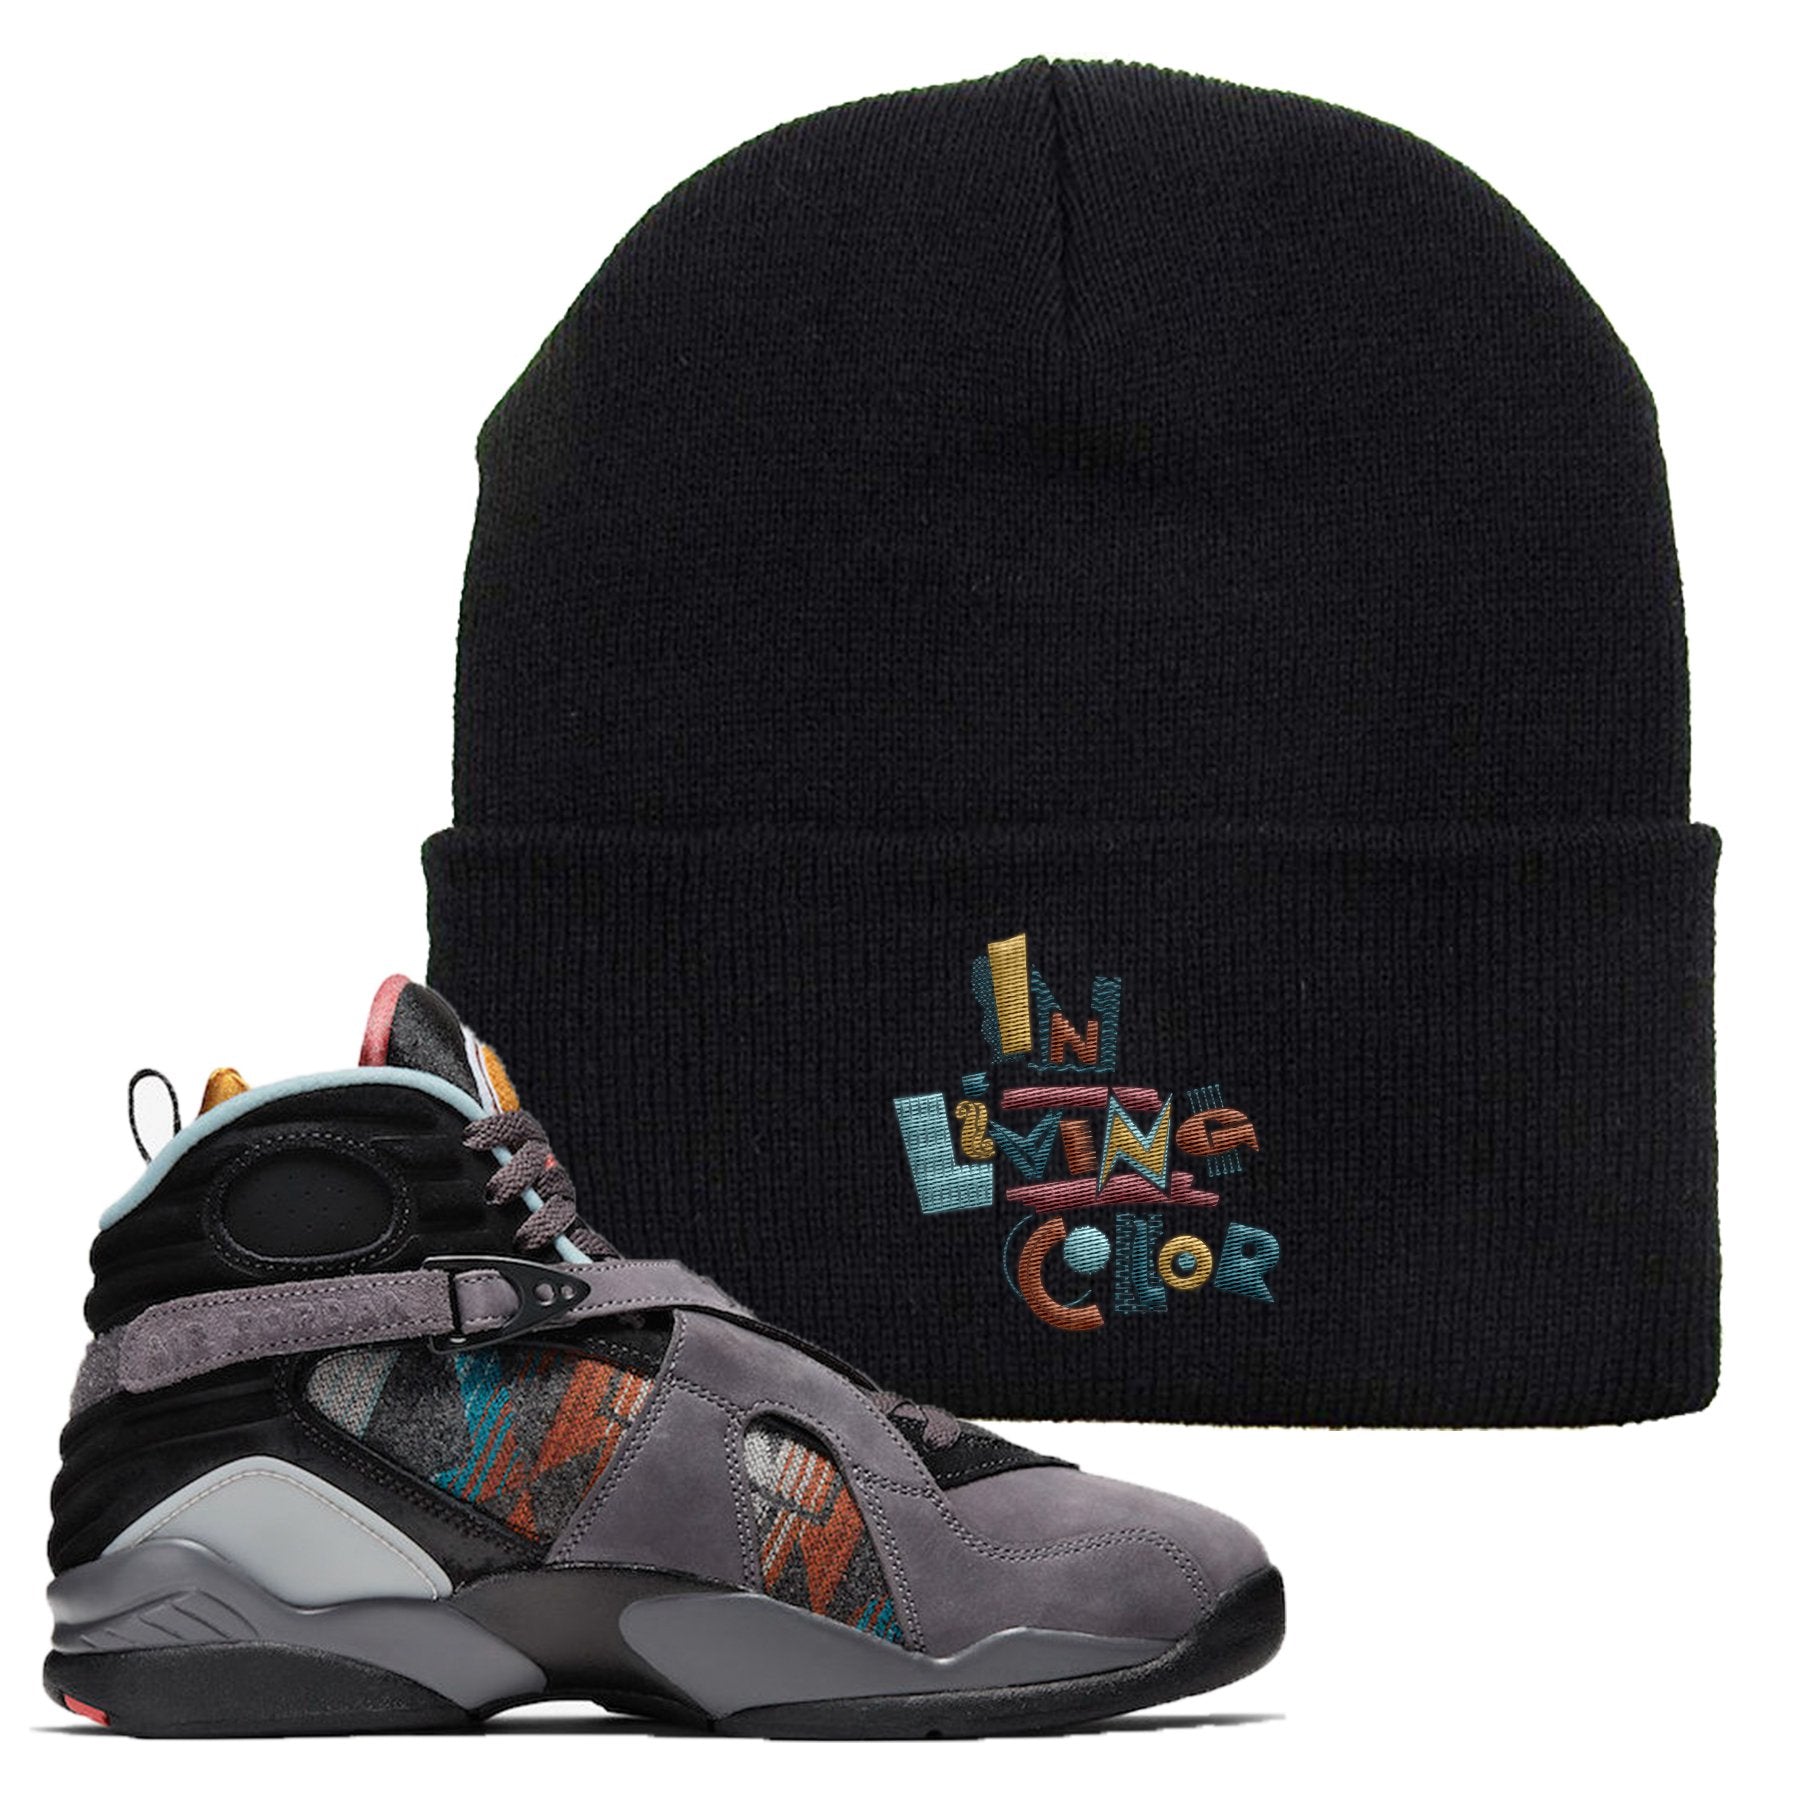 Jordan 8 N7 Pendleton In Living Color Black Sneaker Hook Up Beanie